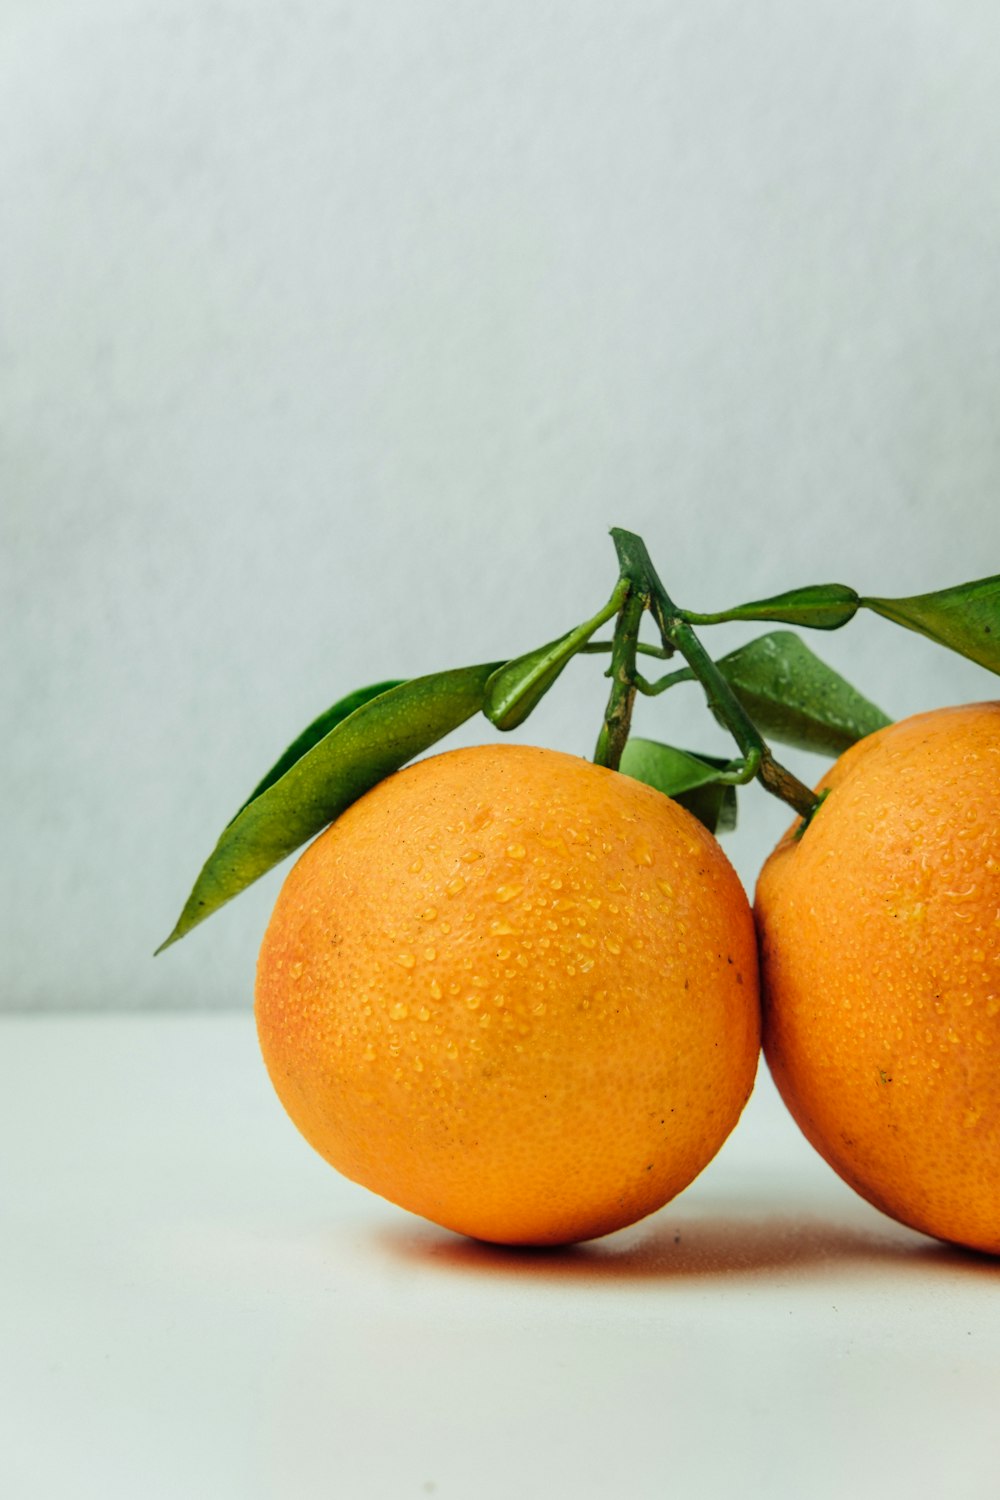 テーブルの上に2つのオレンジ色の果物